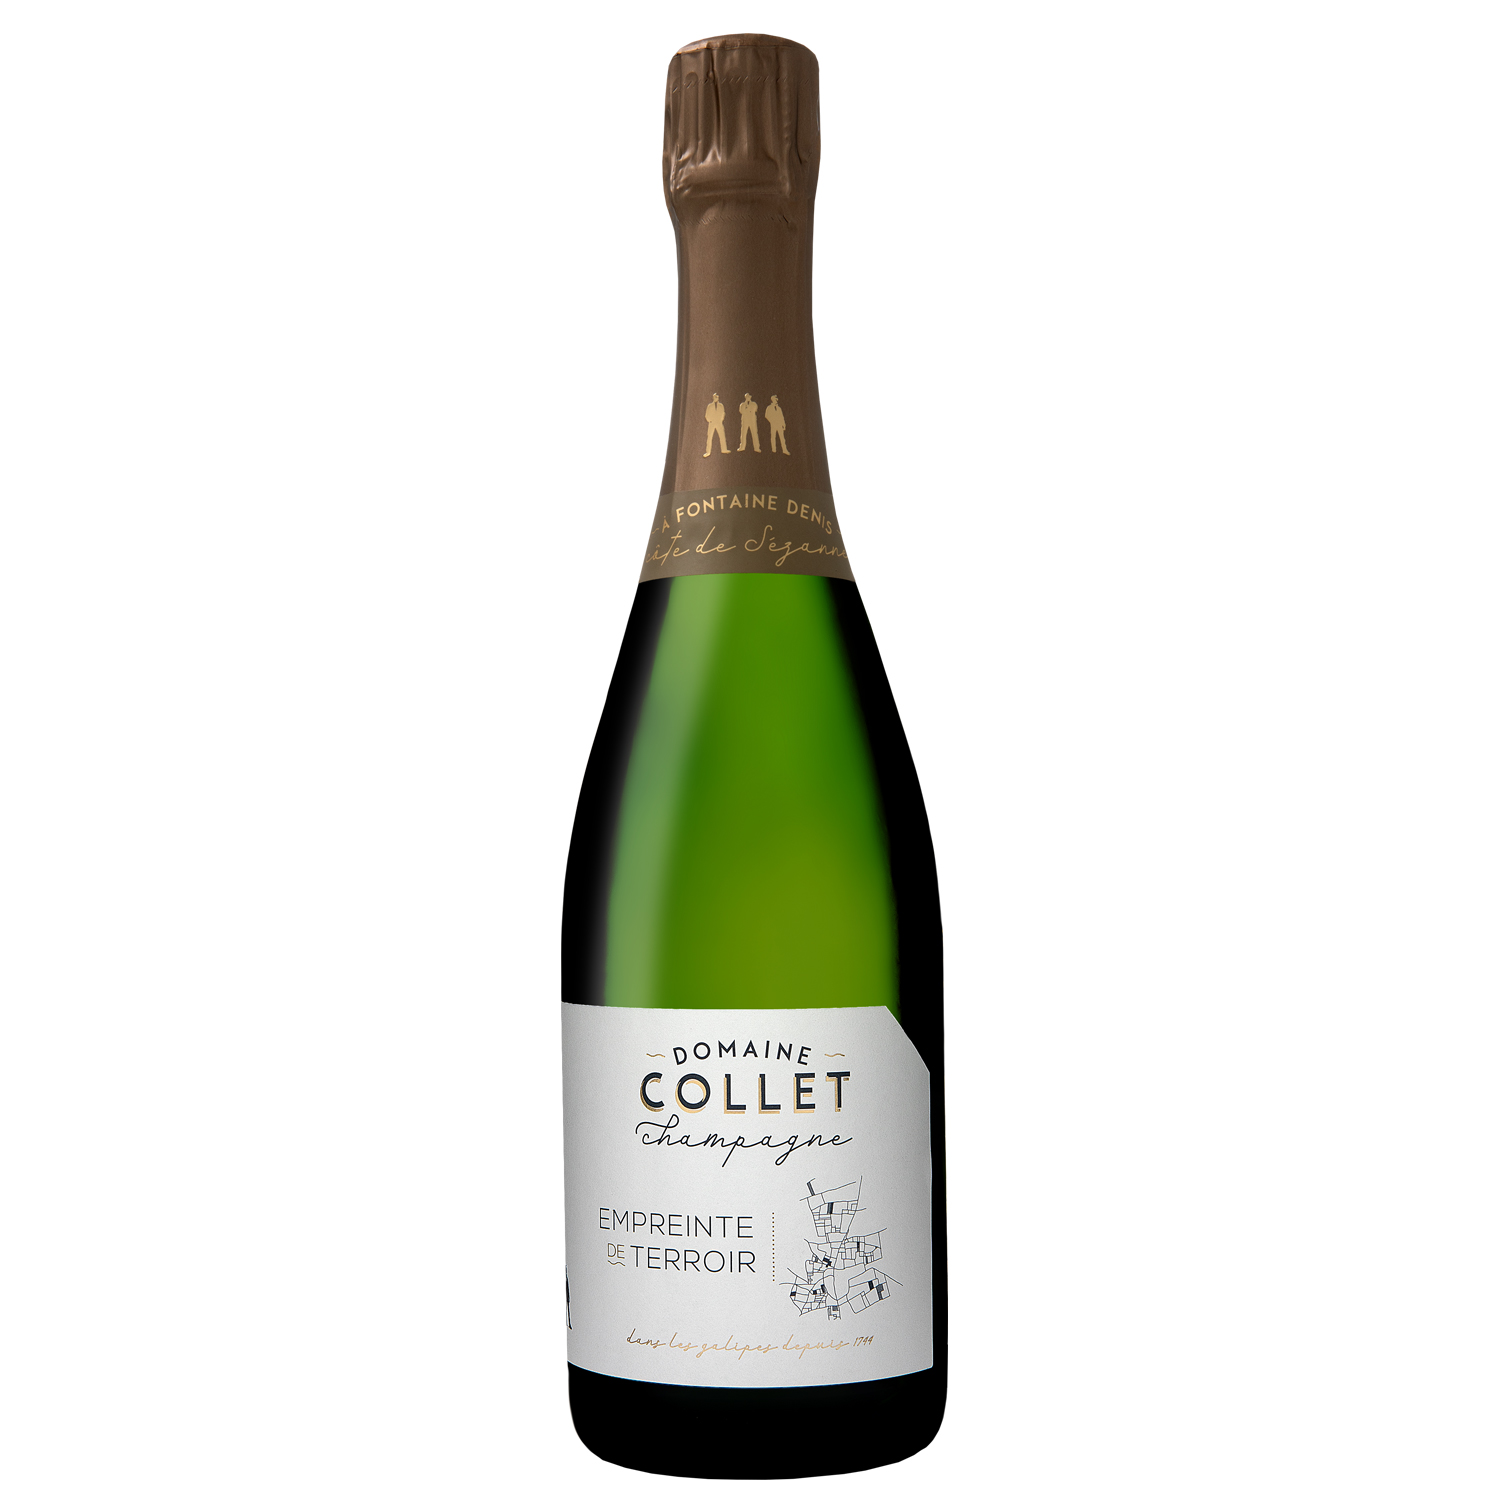 Domaine Collet Champagne Empreinte de Terroir